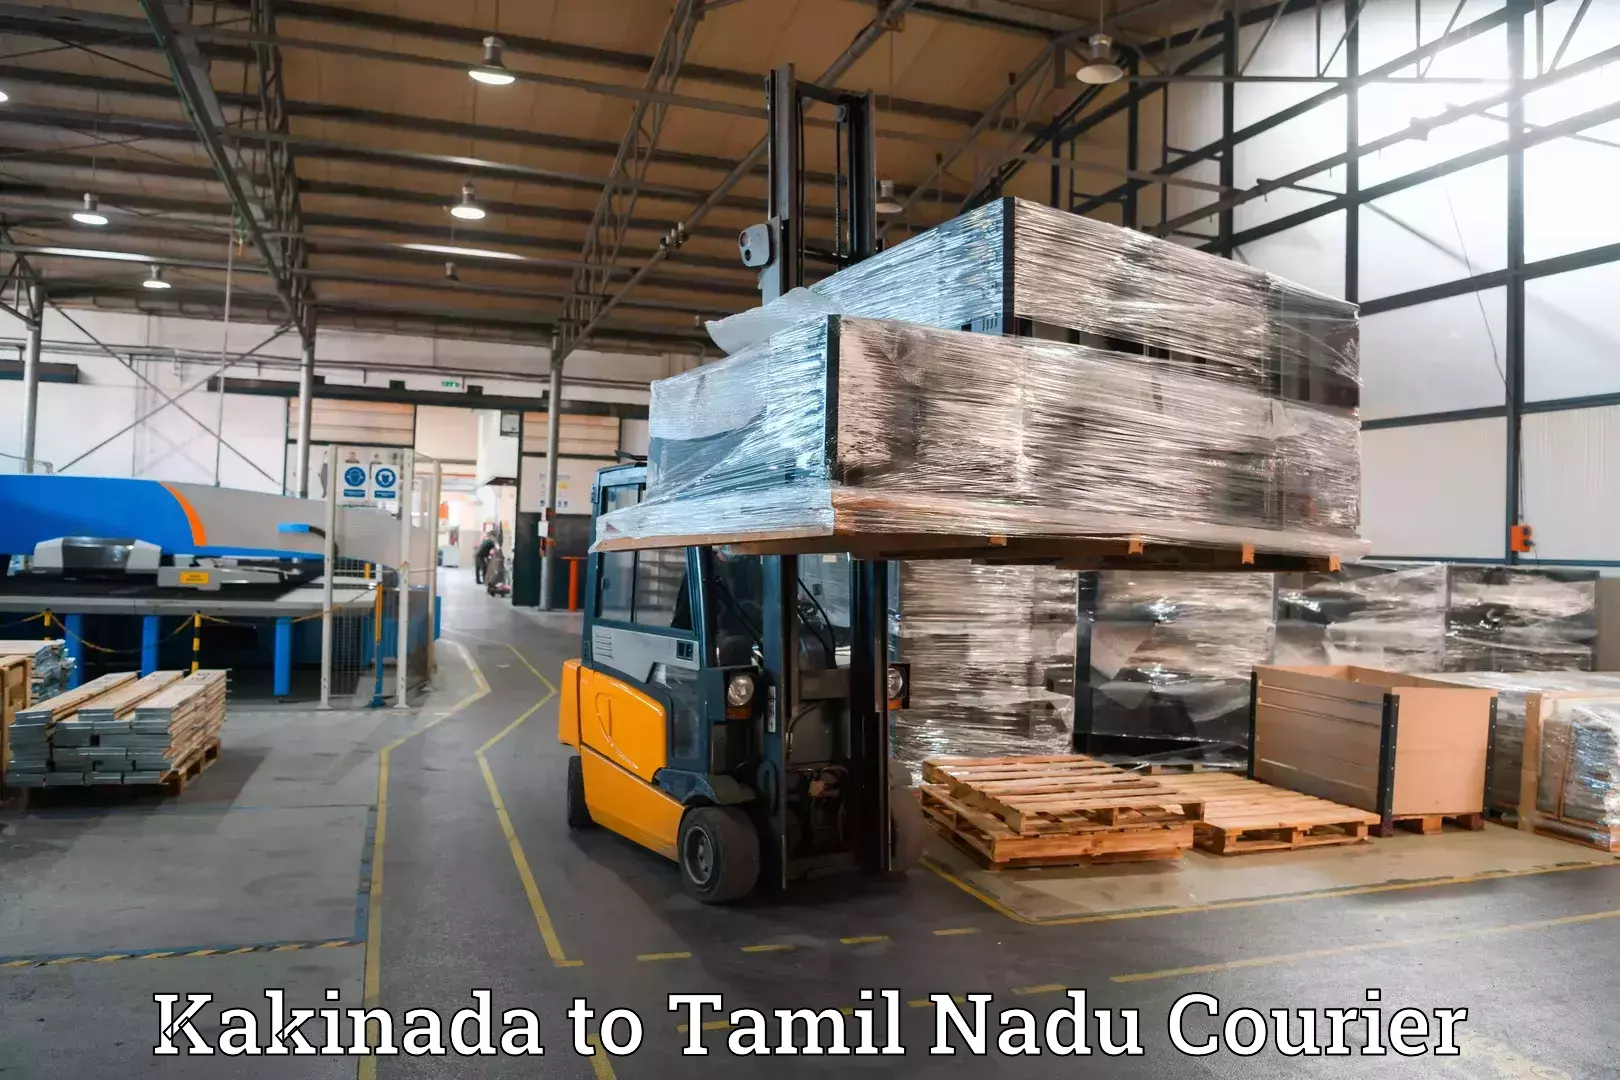 Luggage shipment specialists Kakinada to Arakkonam